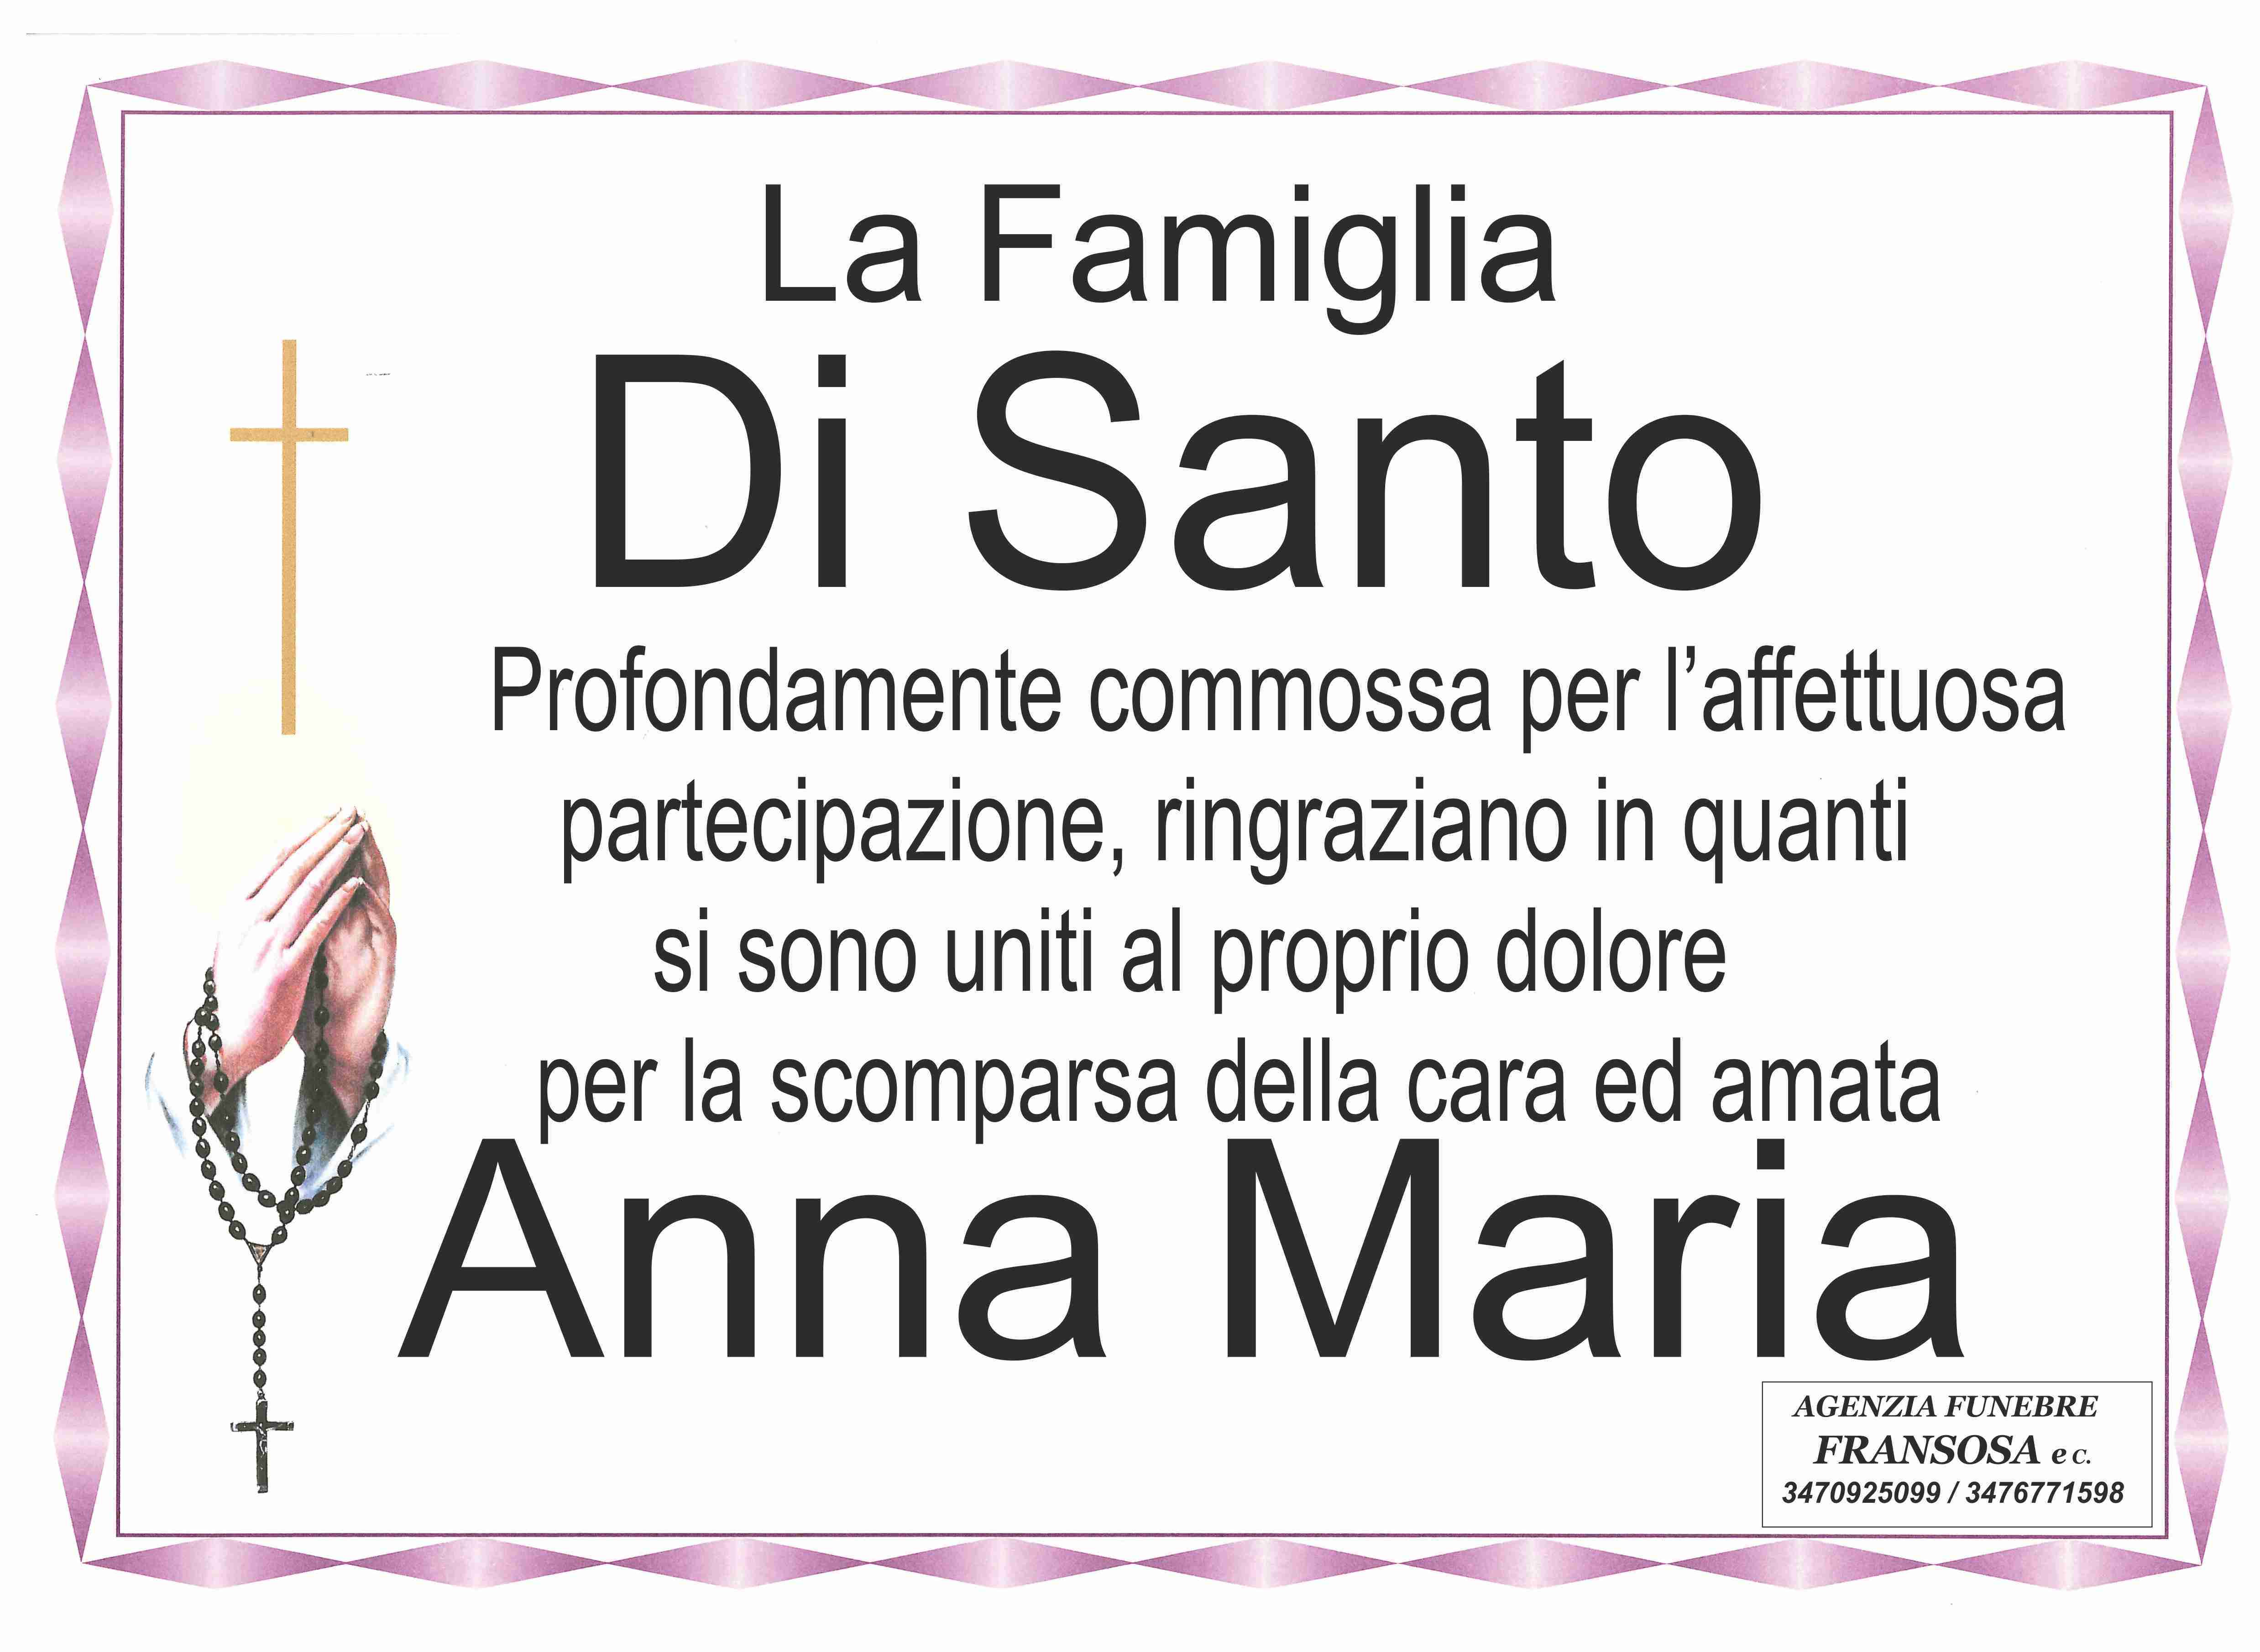 Anna Maria Di Santo